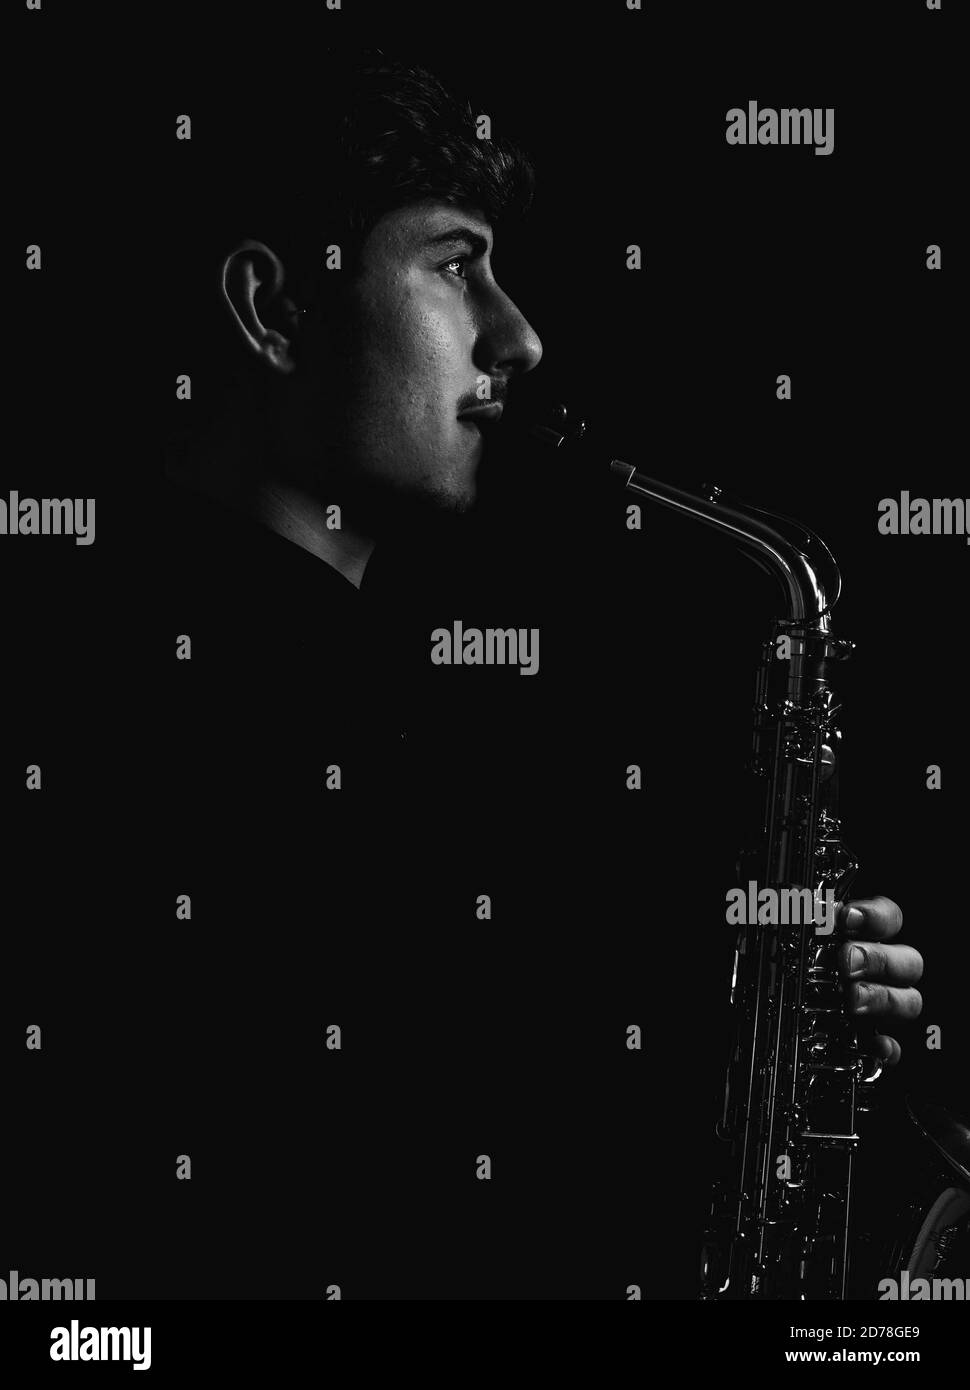 Prise de vue en niveaux de gris d'un gars sympa et charmant jouant son saxophone isolé sur fond sombre Banque D'Images